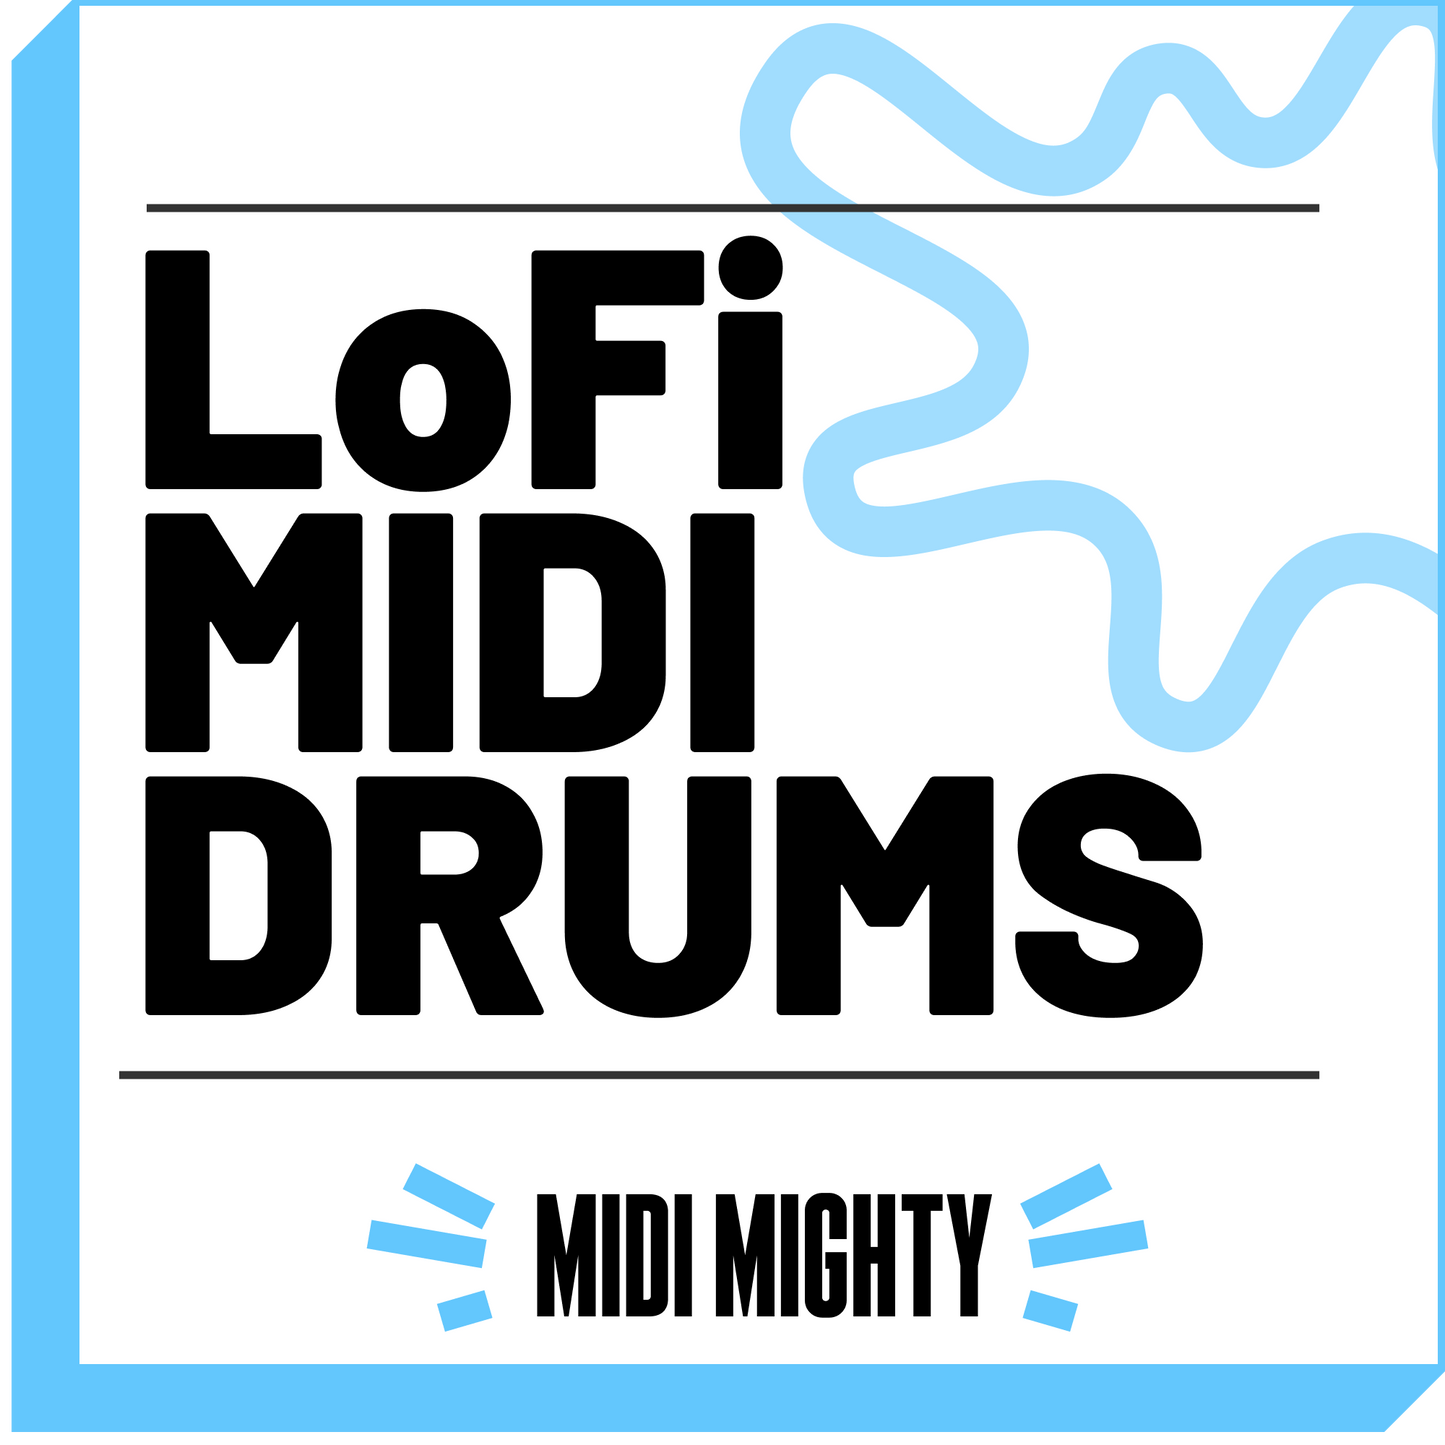 LoFi Drum Guide - MIDI MIGHTY